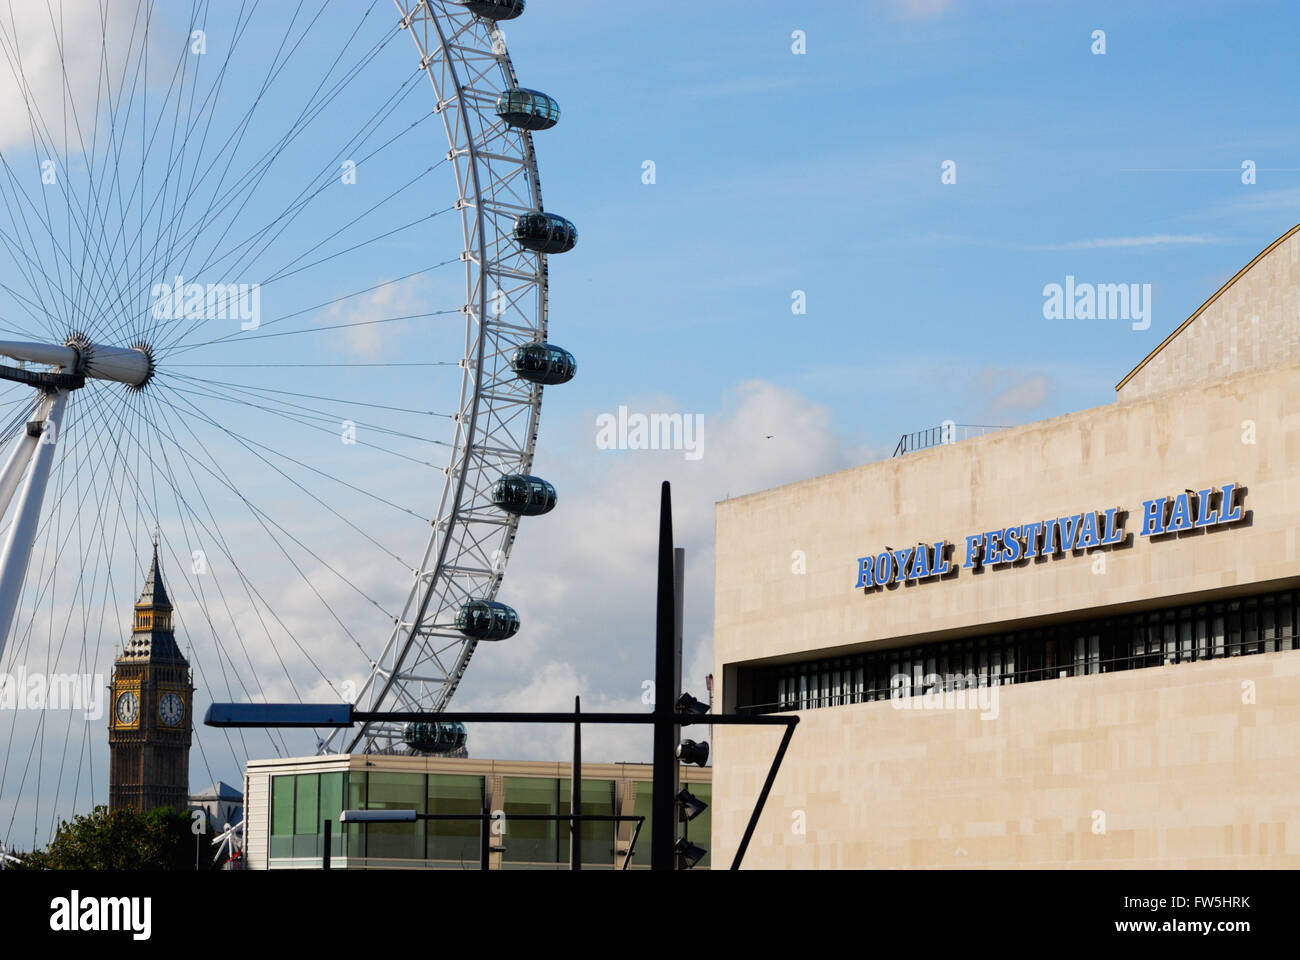 Royal Festival Hall, RFH, concert hall a Londra il south bank, visto con il London Eye e il Big Ben Foto Stock